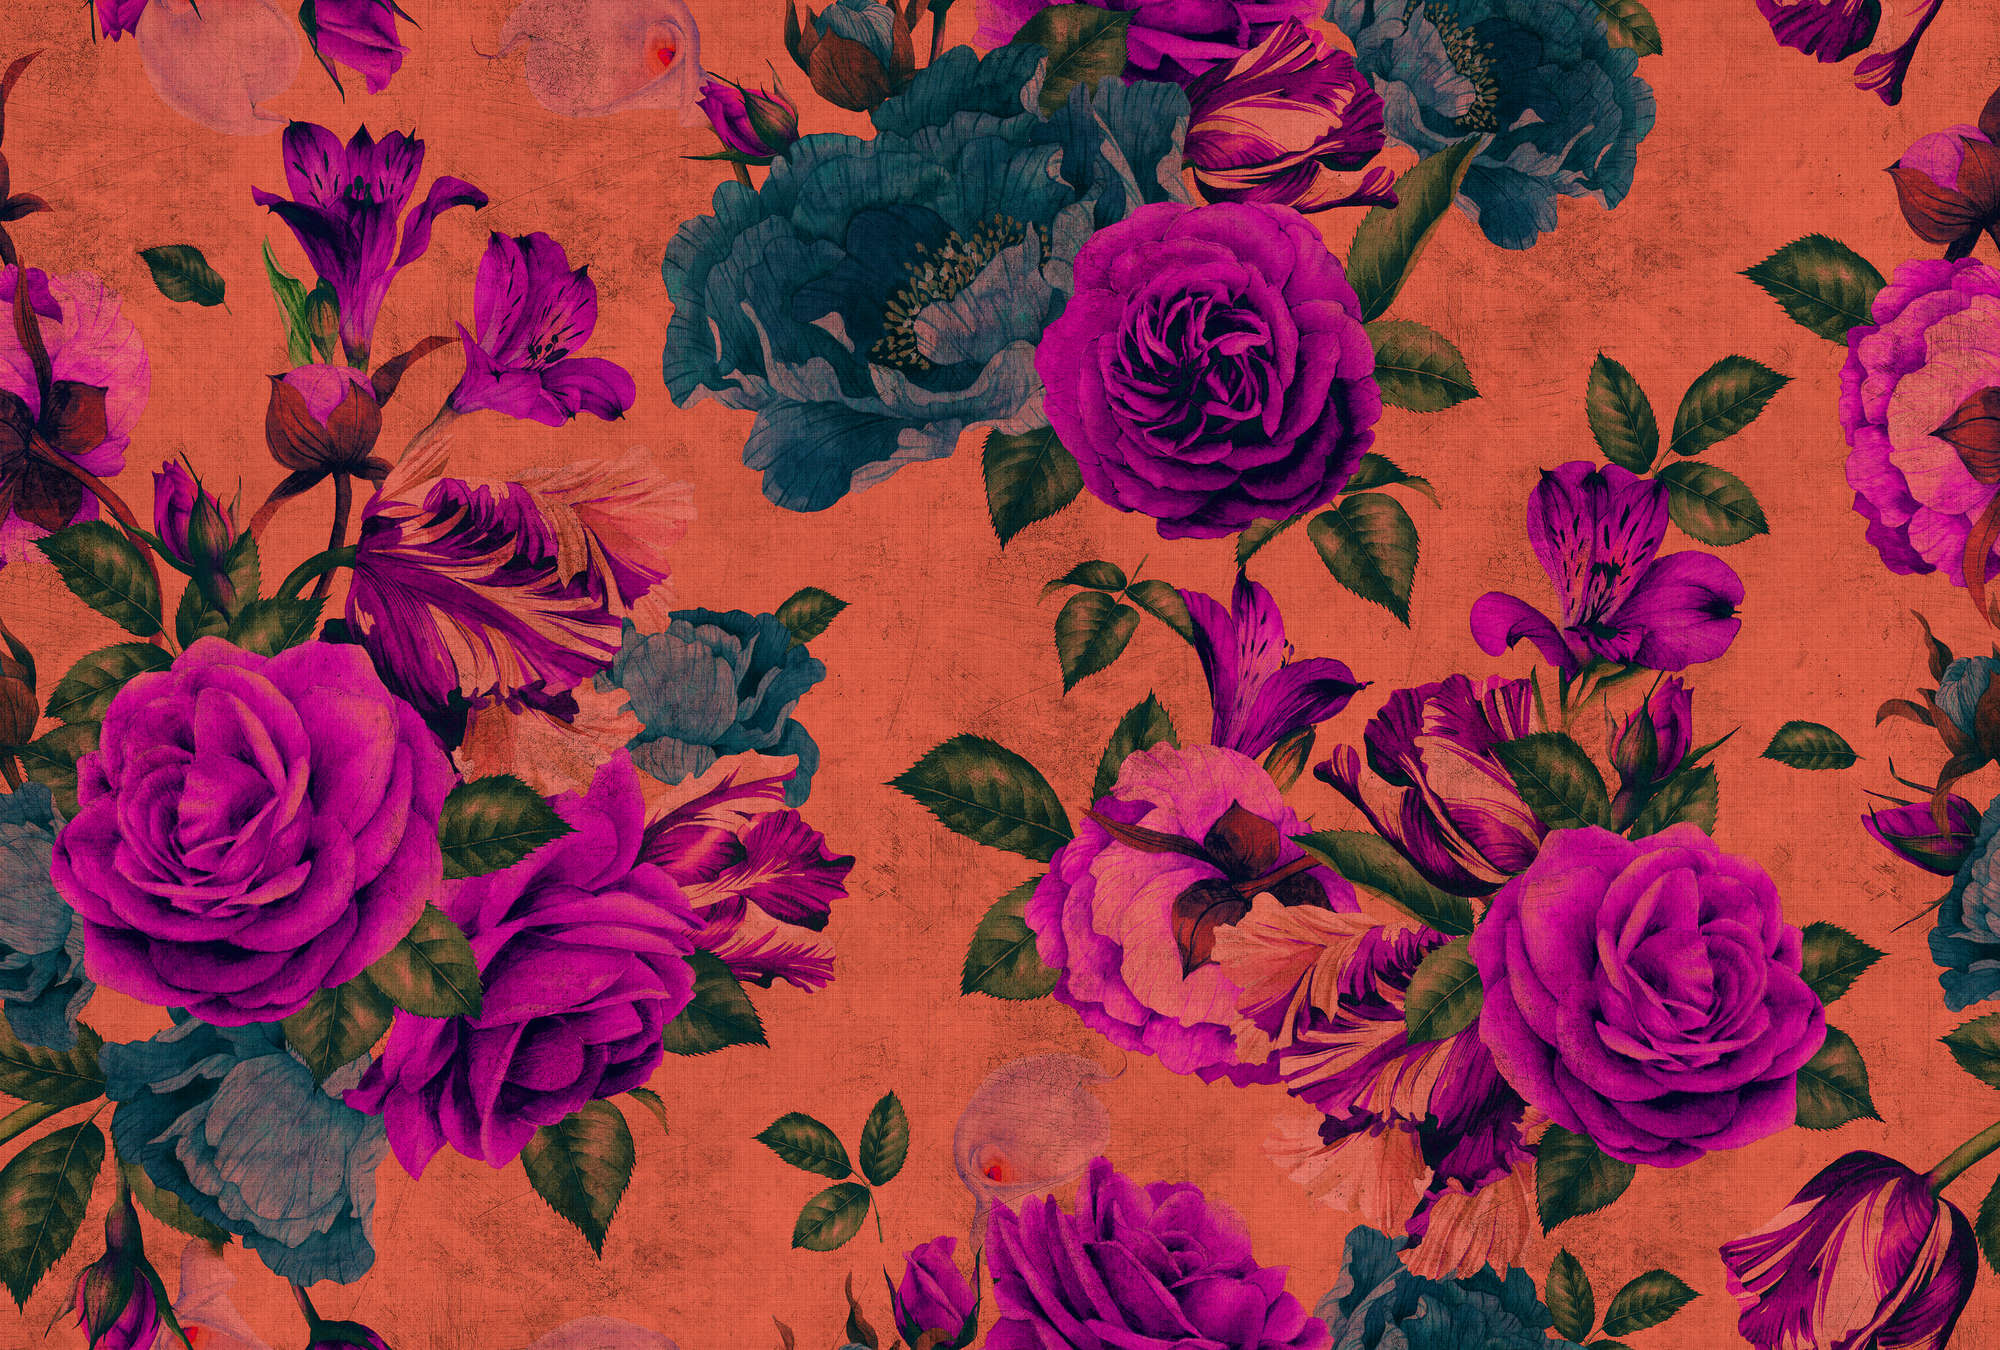             Spanish rose 2 - Carta da parati con petali di rosa, struttura naturale con colori vivaci - arancio, viola | vello liscio madreperlato
        